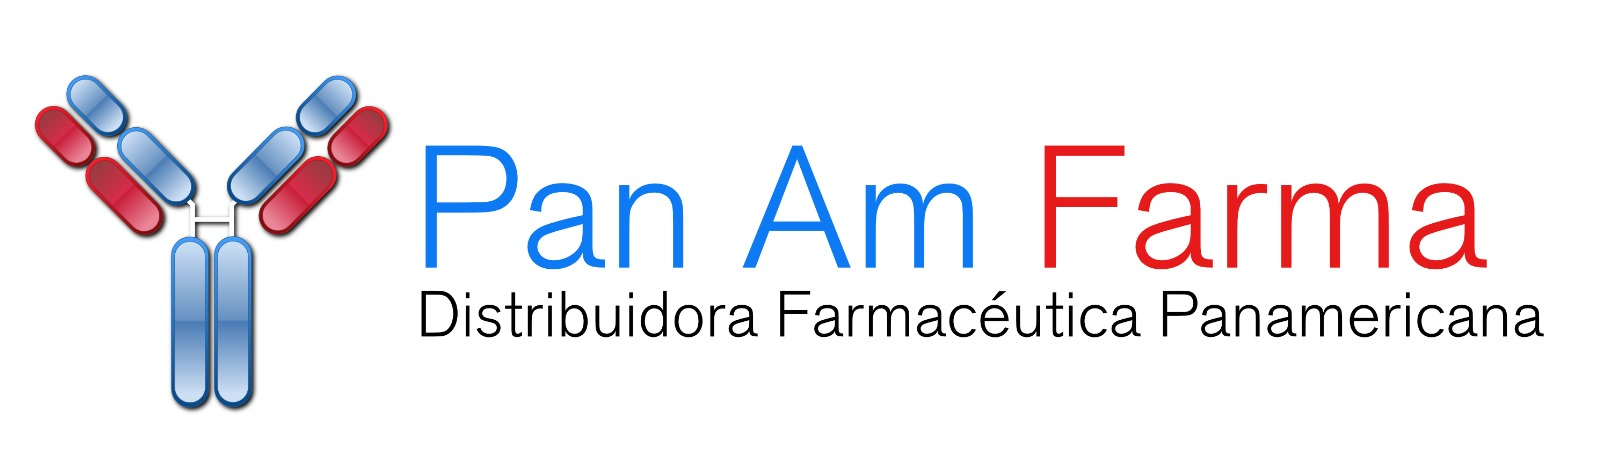 Logo_Panamfarma_horizontal